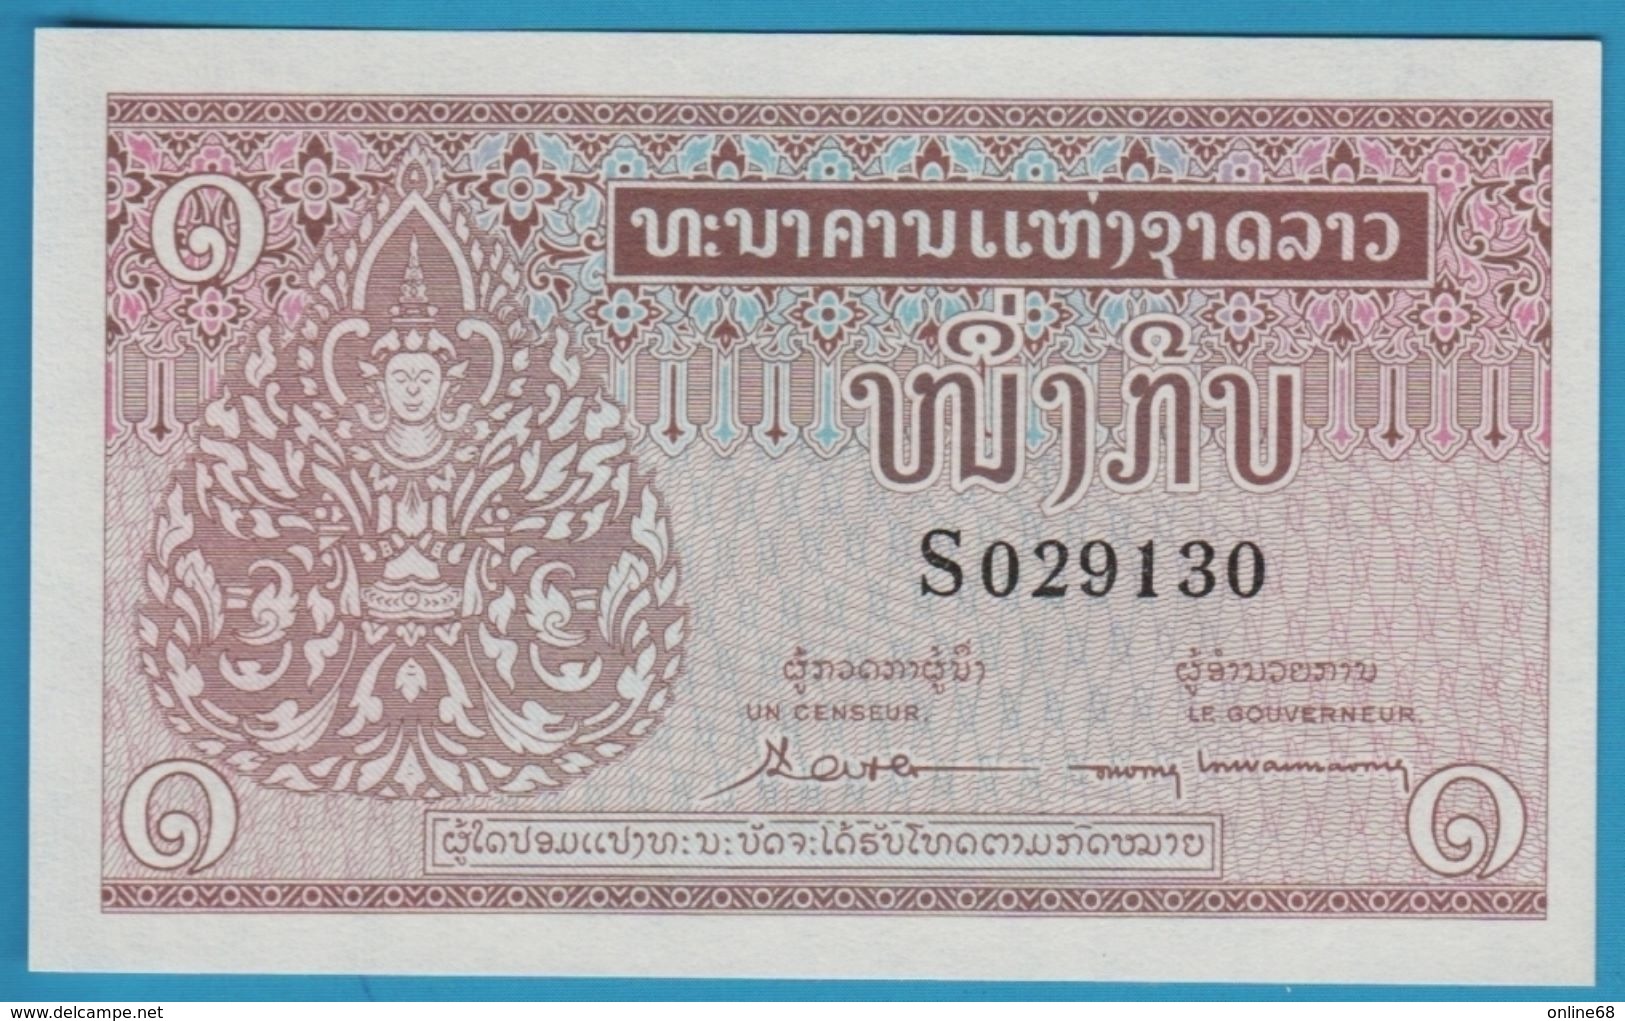 LAOS 1 Kip ND (1962) Serie S 029130 Sign 4 P# 8 - Laos